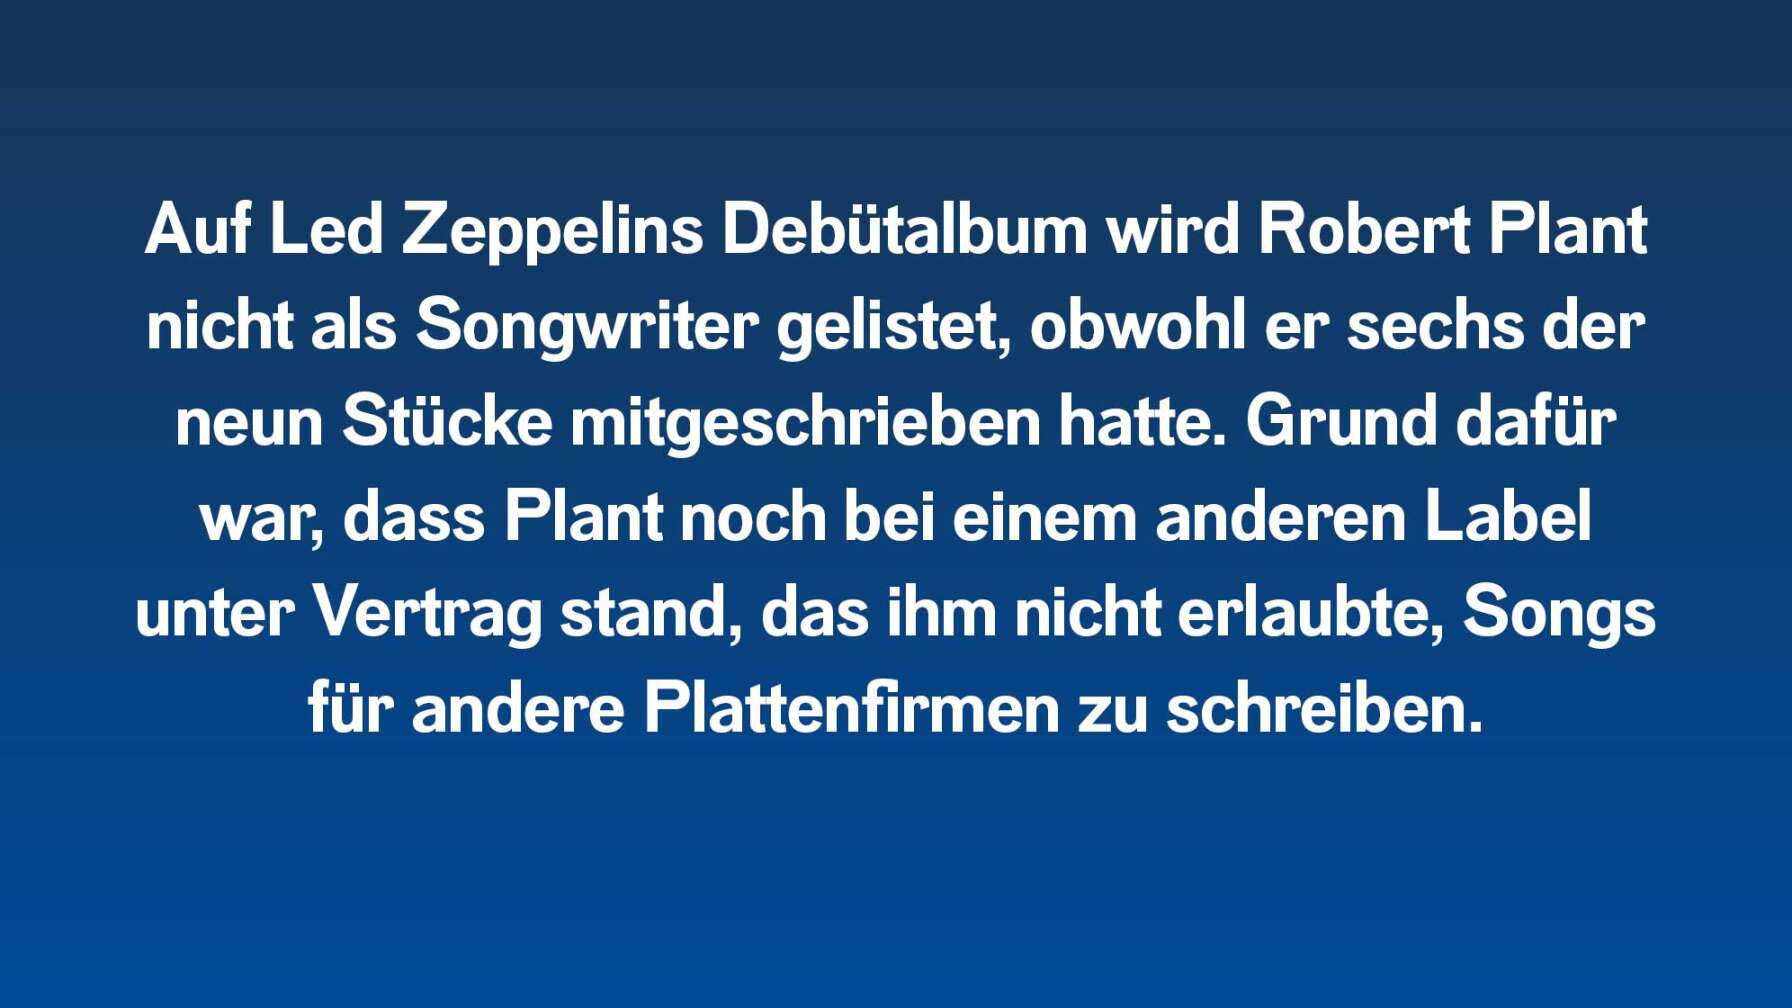 Auf Led Zeppelins Debütalbum wird Robert Plant nicht als Songwriter gelistet, obwohl er sechs der neun Stücke mitschrieb. Grund dafür war, dass Plant noch bei einem anderen Label unter Vertrag war, das ihm nicht erlaubte, Songs für andere Plattenfirmen zu schreiben.